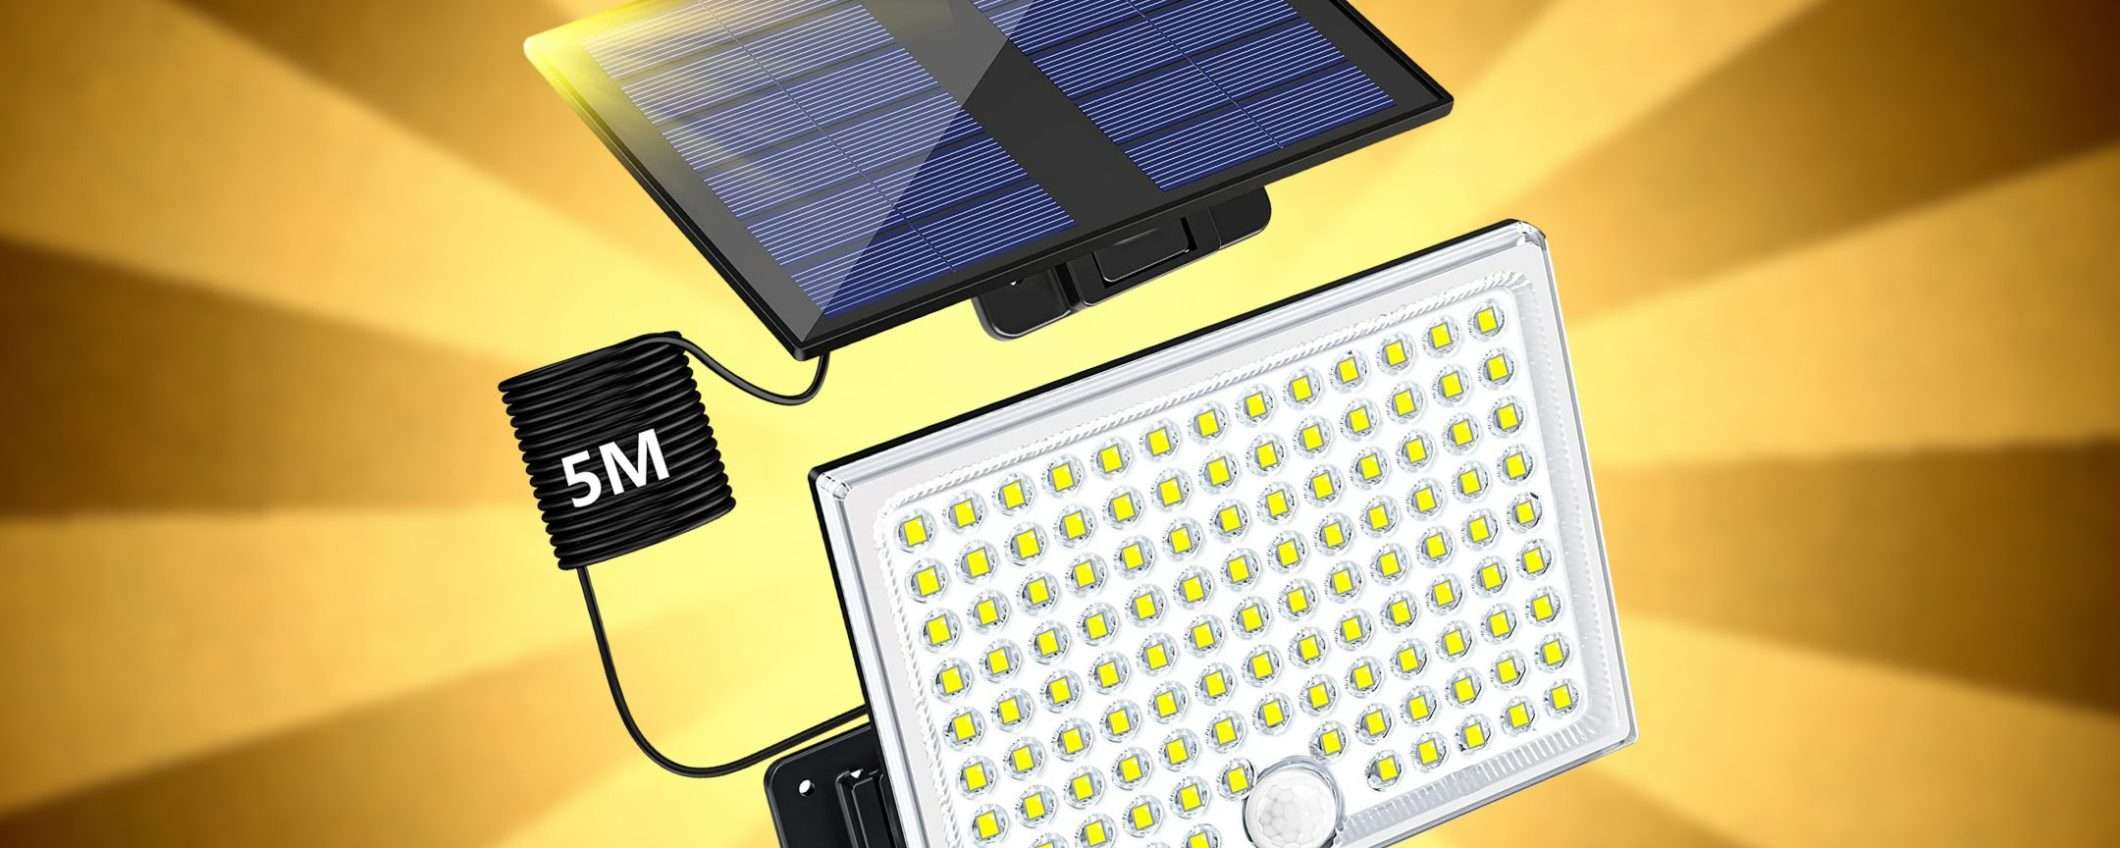 Faro solare ULTRA LUMINOSO: moltissima luce, prezzo ridicolo su Amazon (15€)